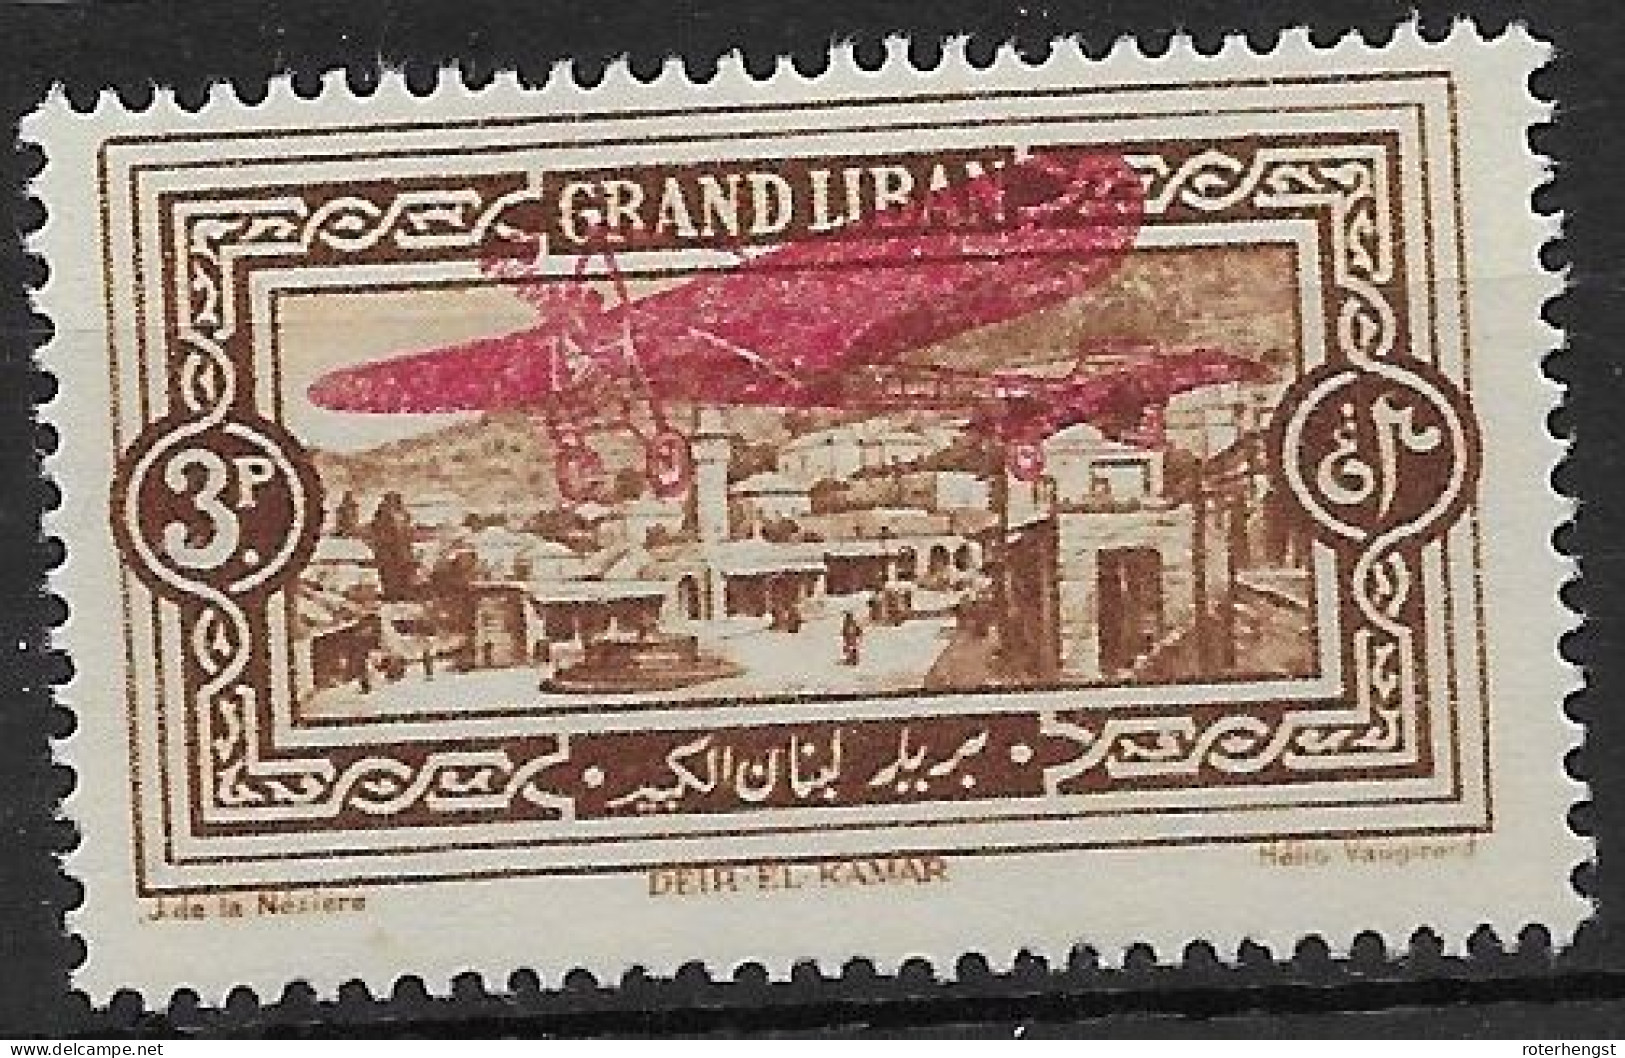 Grand Liban 1926 Airmail Mh* 5 Euros - Luchtpost